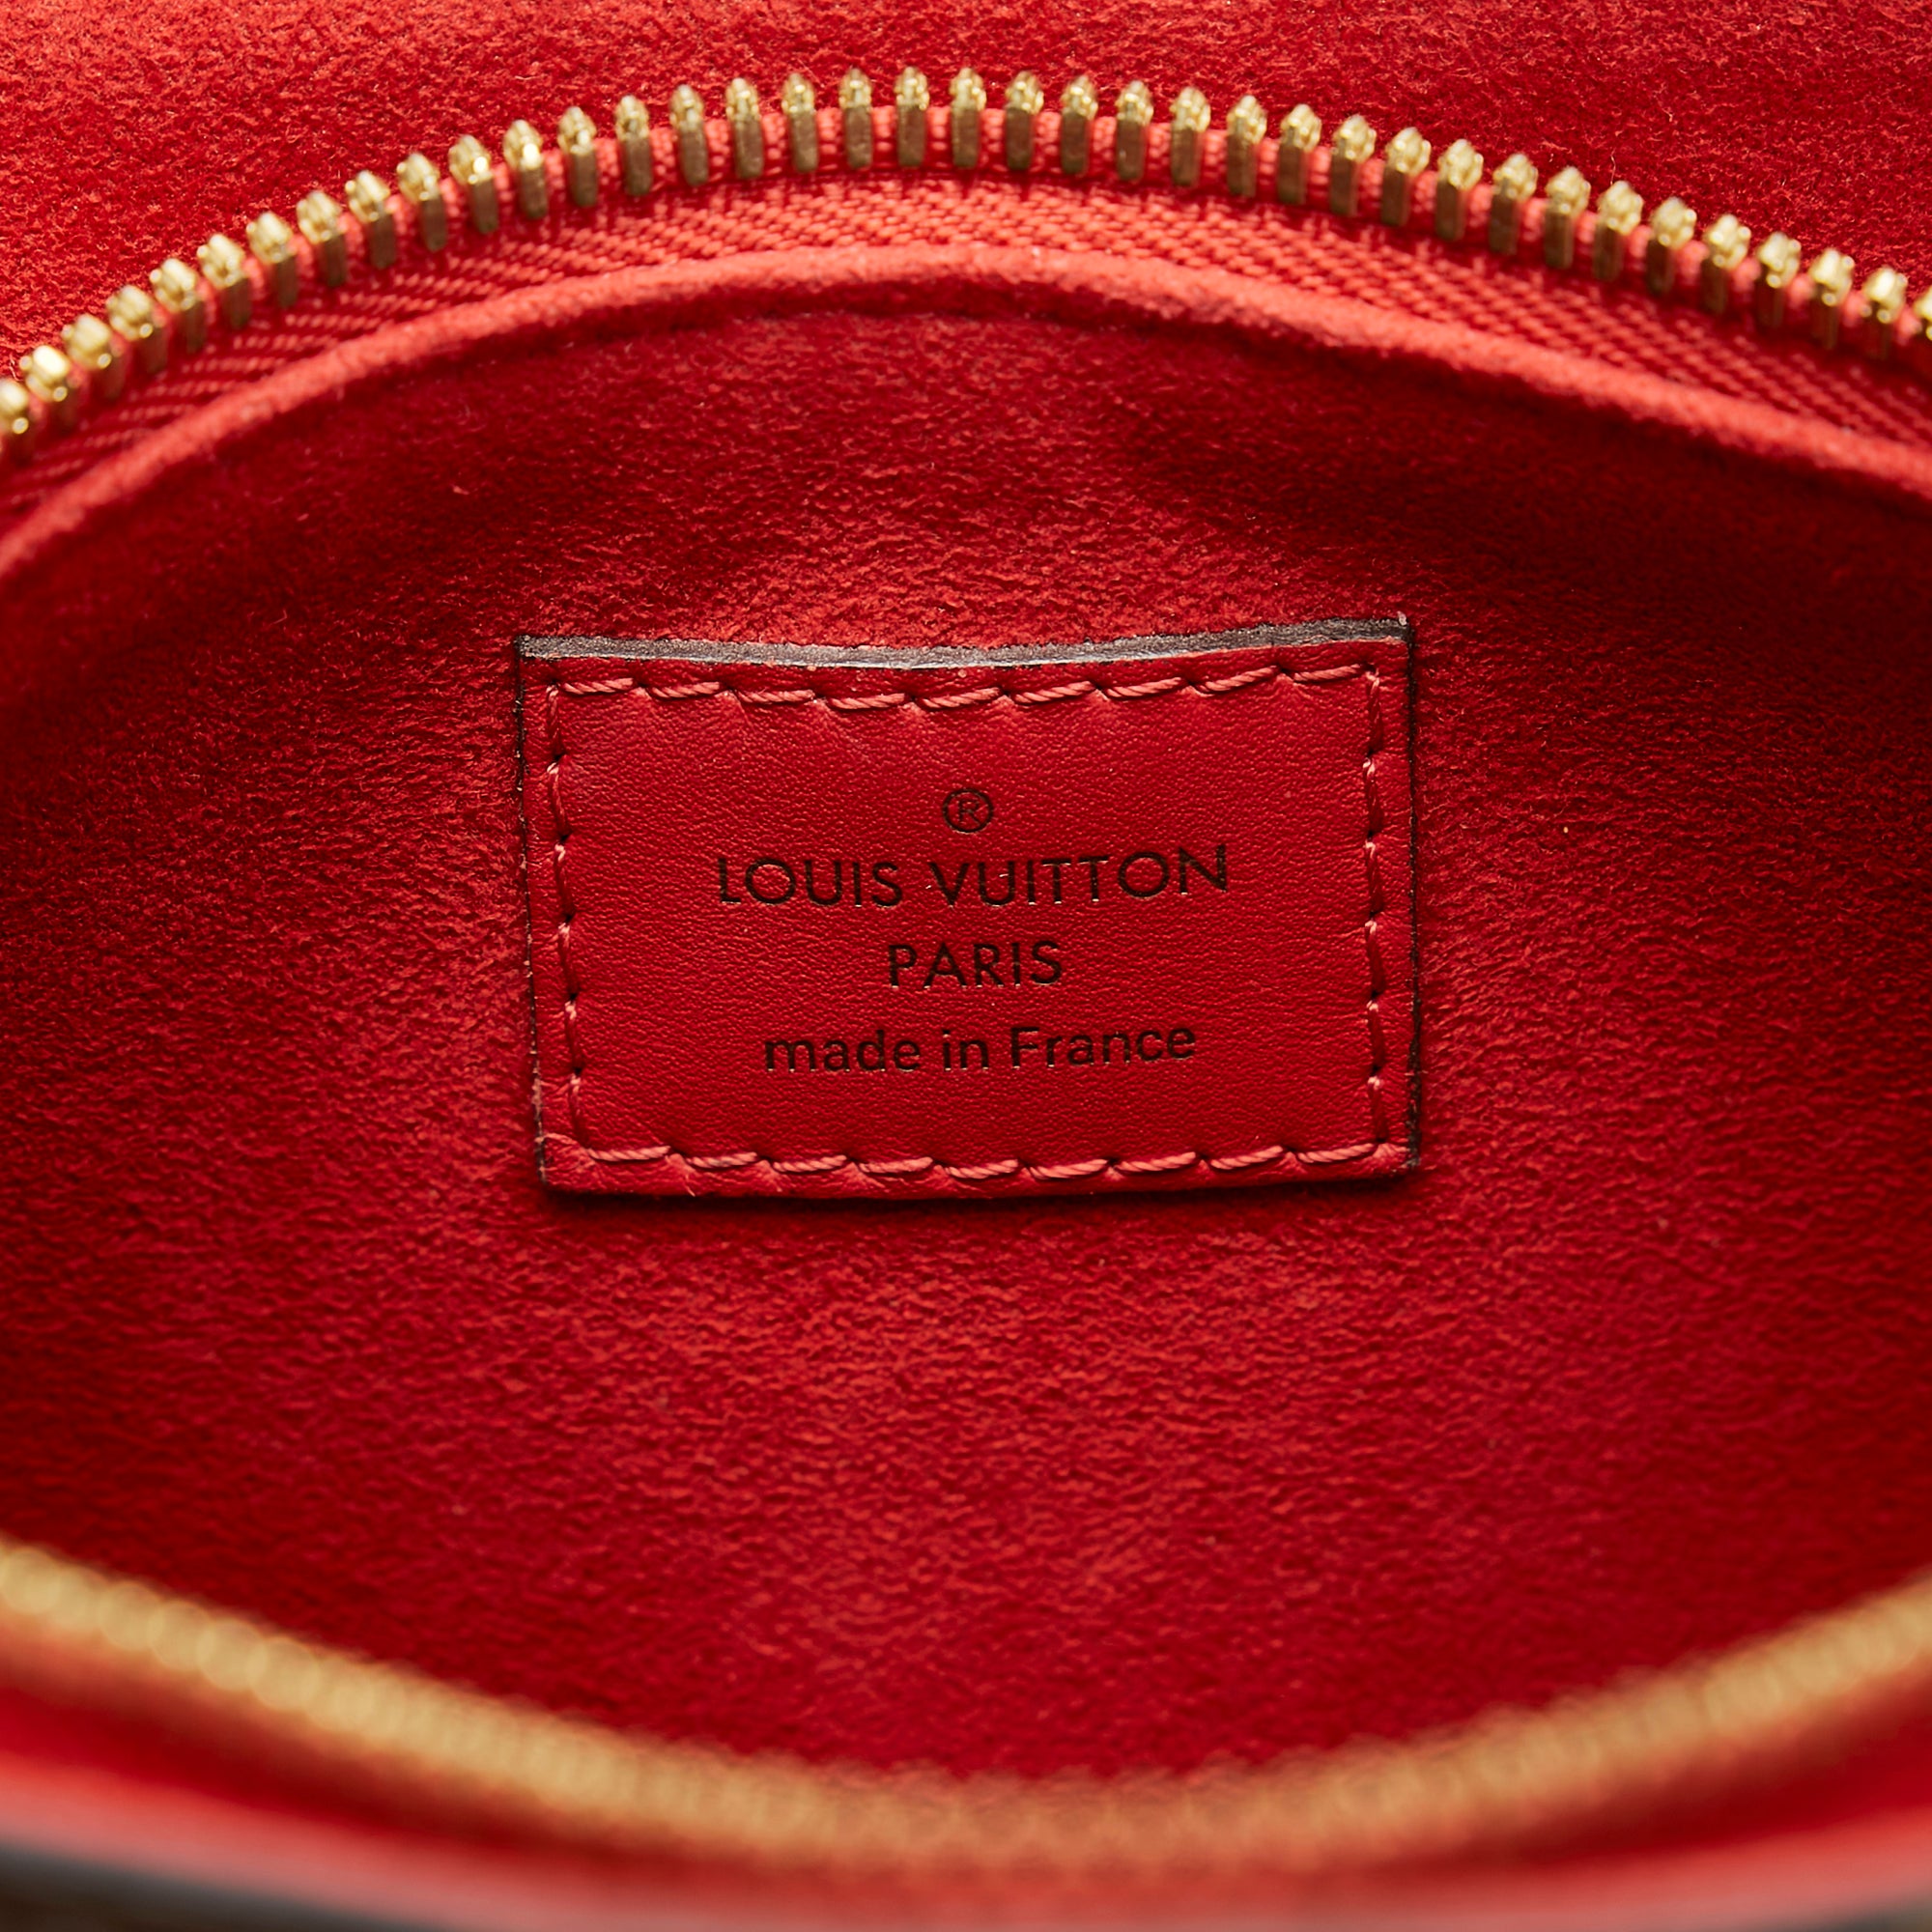 Louis Vuitton Soufflot BB bag – The Happy Closet